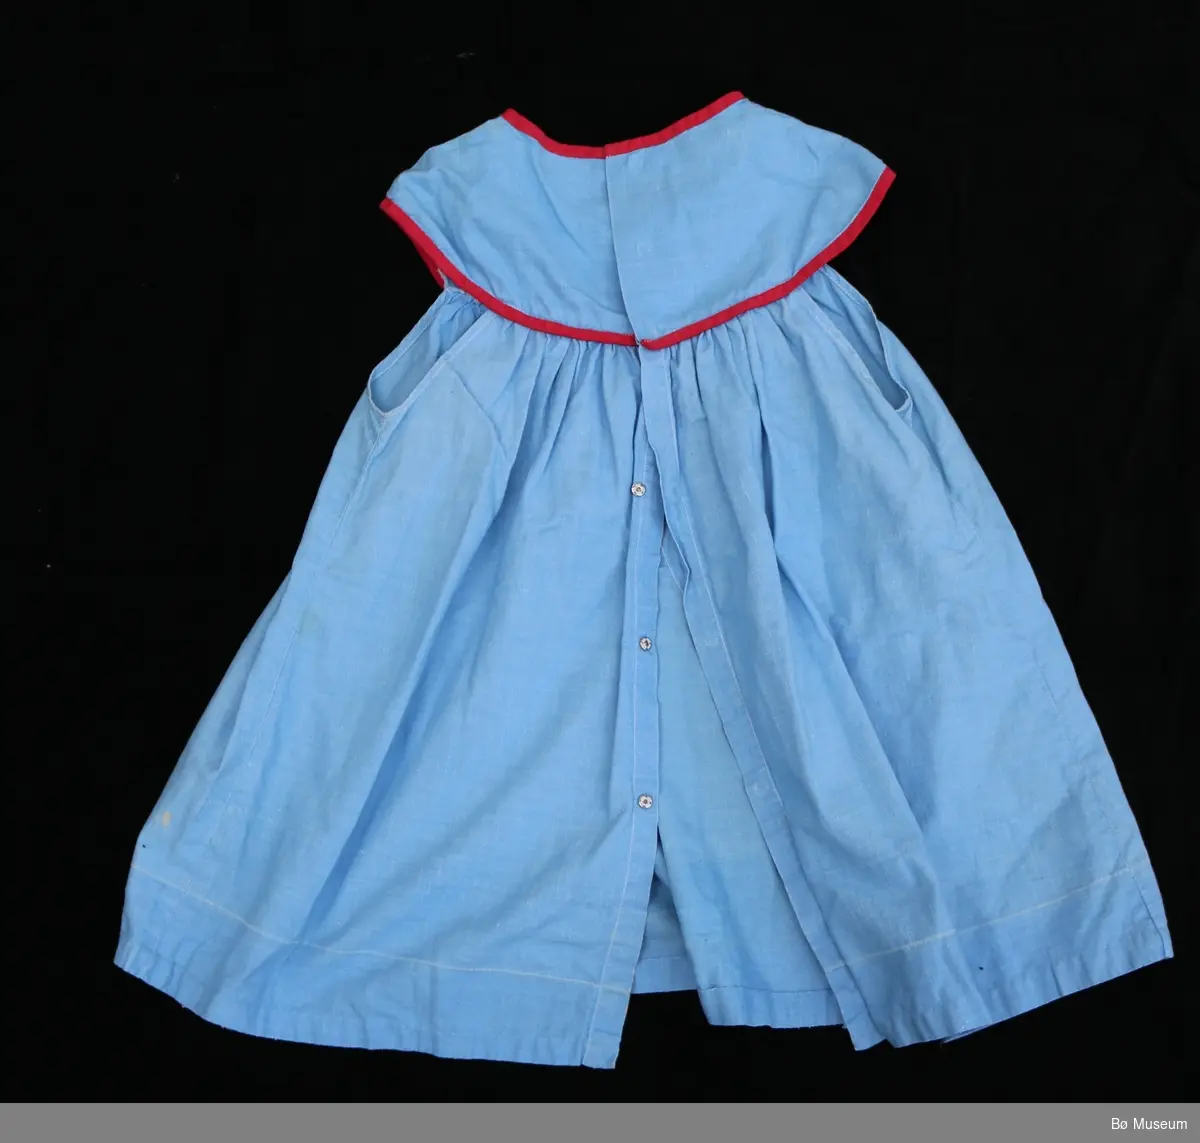 Blå babykjole med raud kanting.
Foran er er to små lommer.